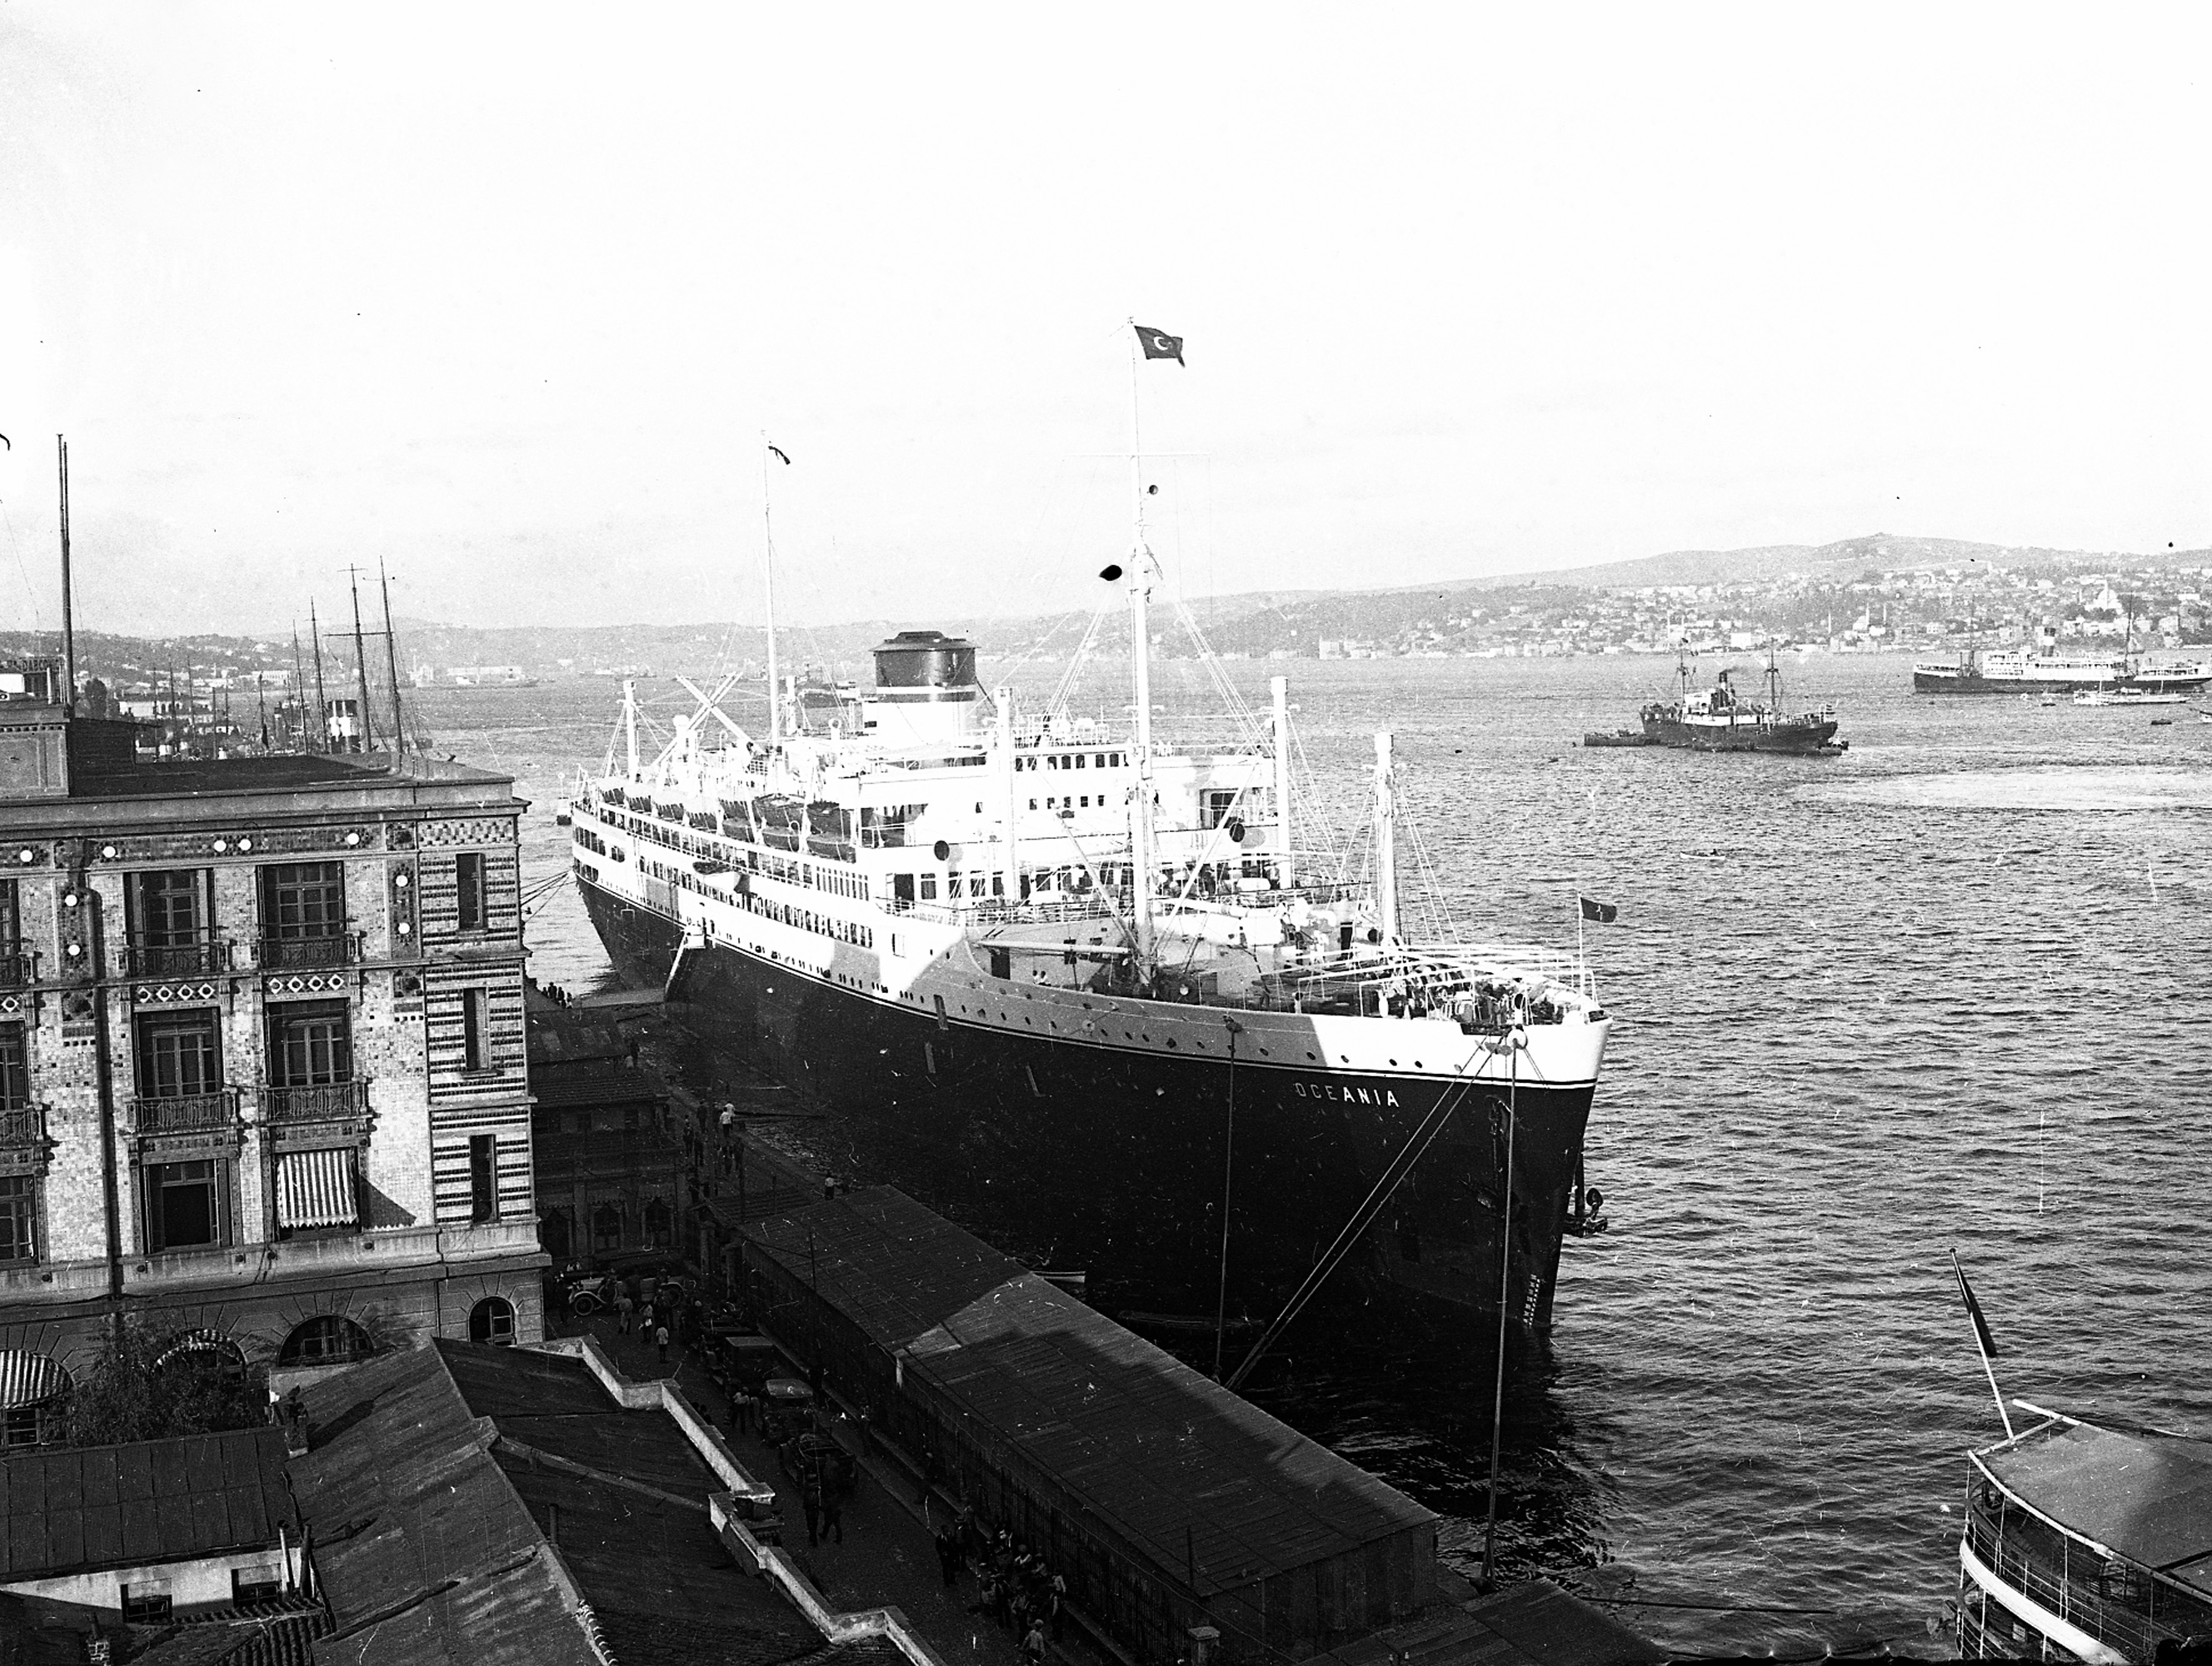 Oceania yolcu gemisi Karaköy rıhtımında